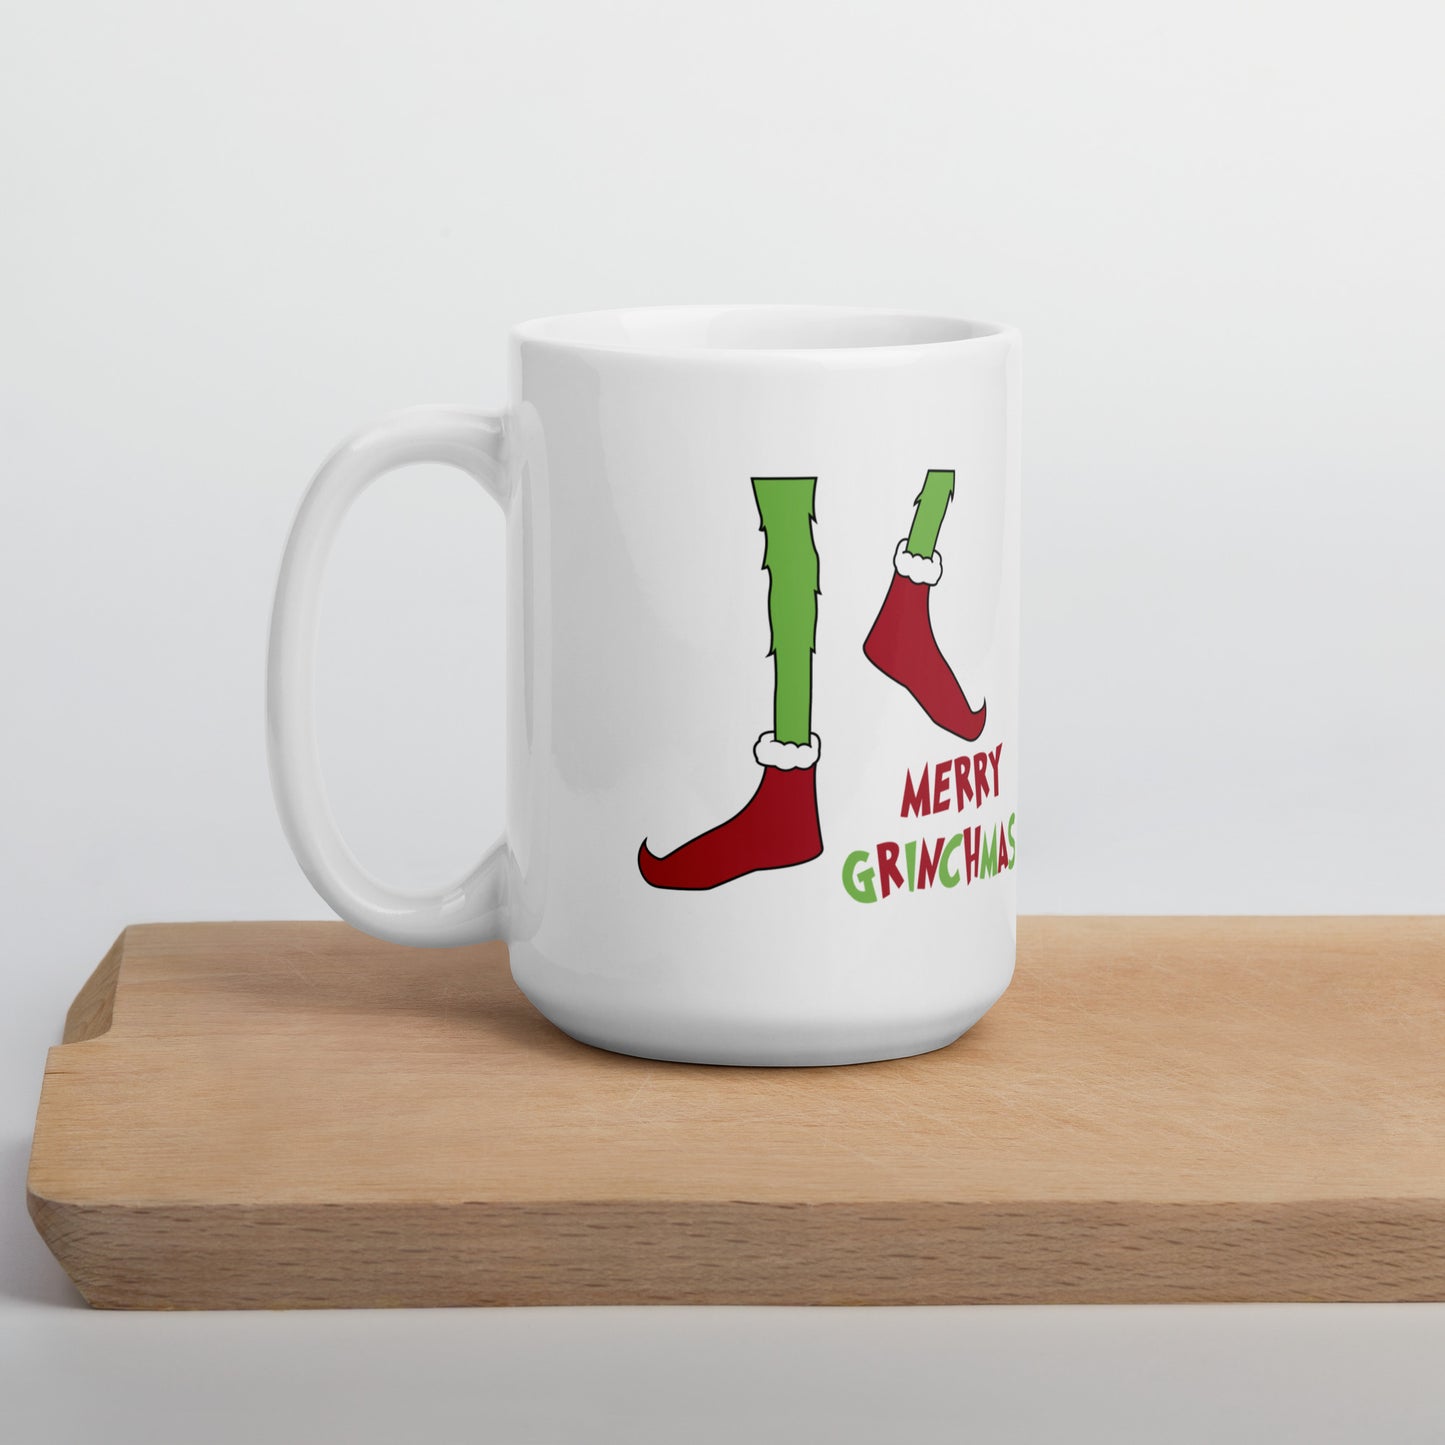 Merry Grinchmas Christmas Mug